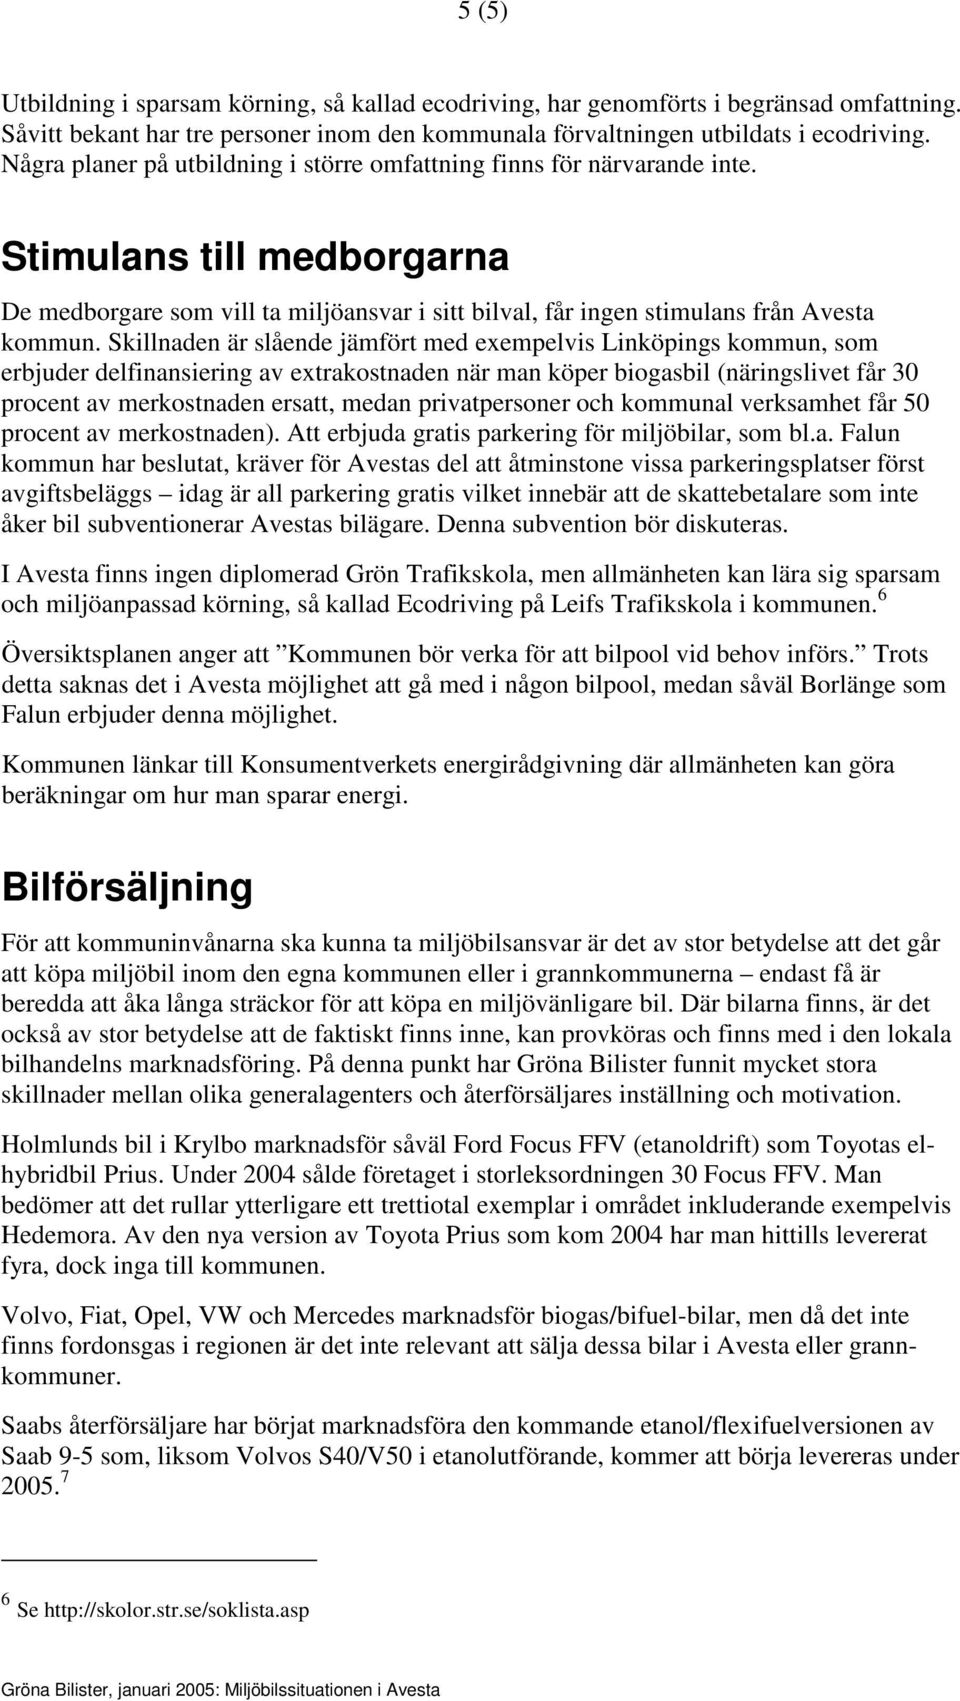 Skillnaden är slående jämfört med exempelvis Linköpings kommun, som erbjuder delfinansiering av extrakostnaden när man köper biogasbil (näringslivet får 30 procent av merkostnaden ersatt, medan